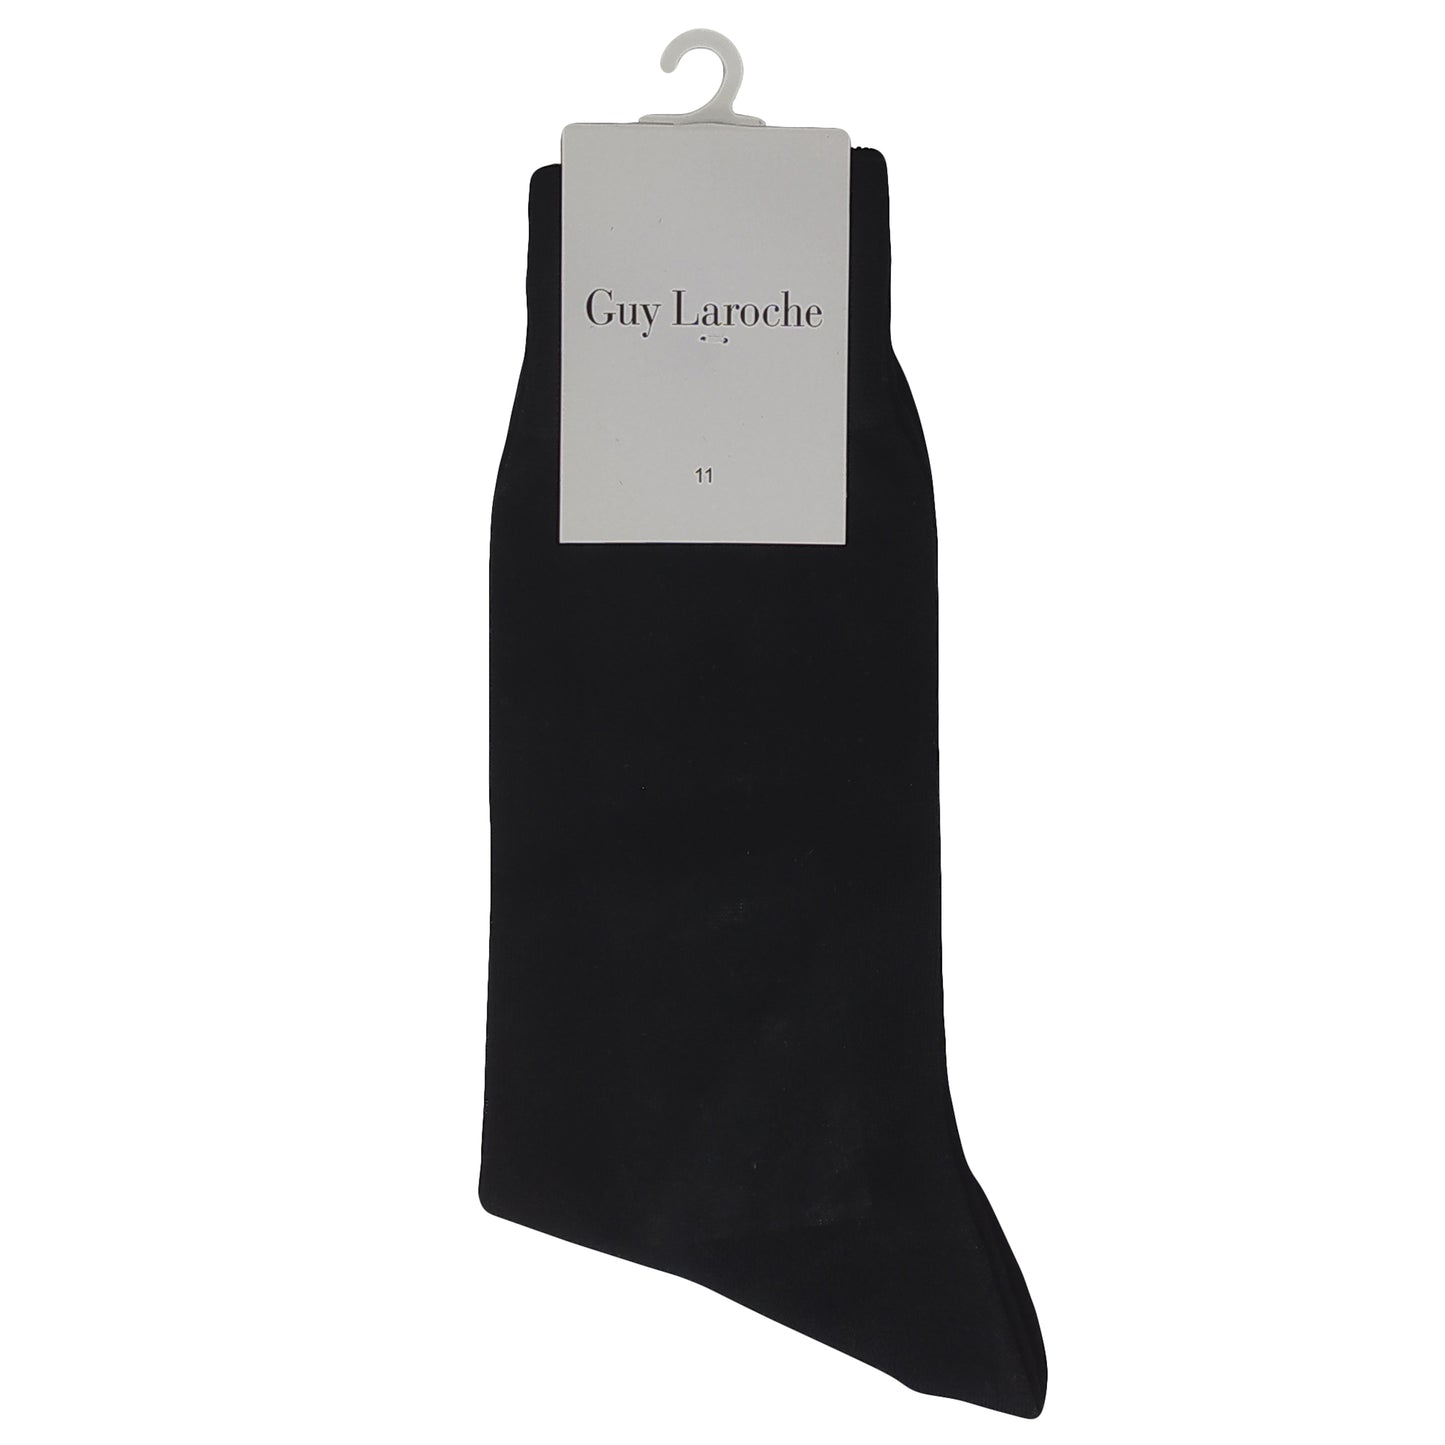 Guy Laroche Socks Black 7097 BLACK